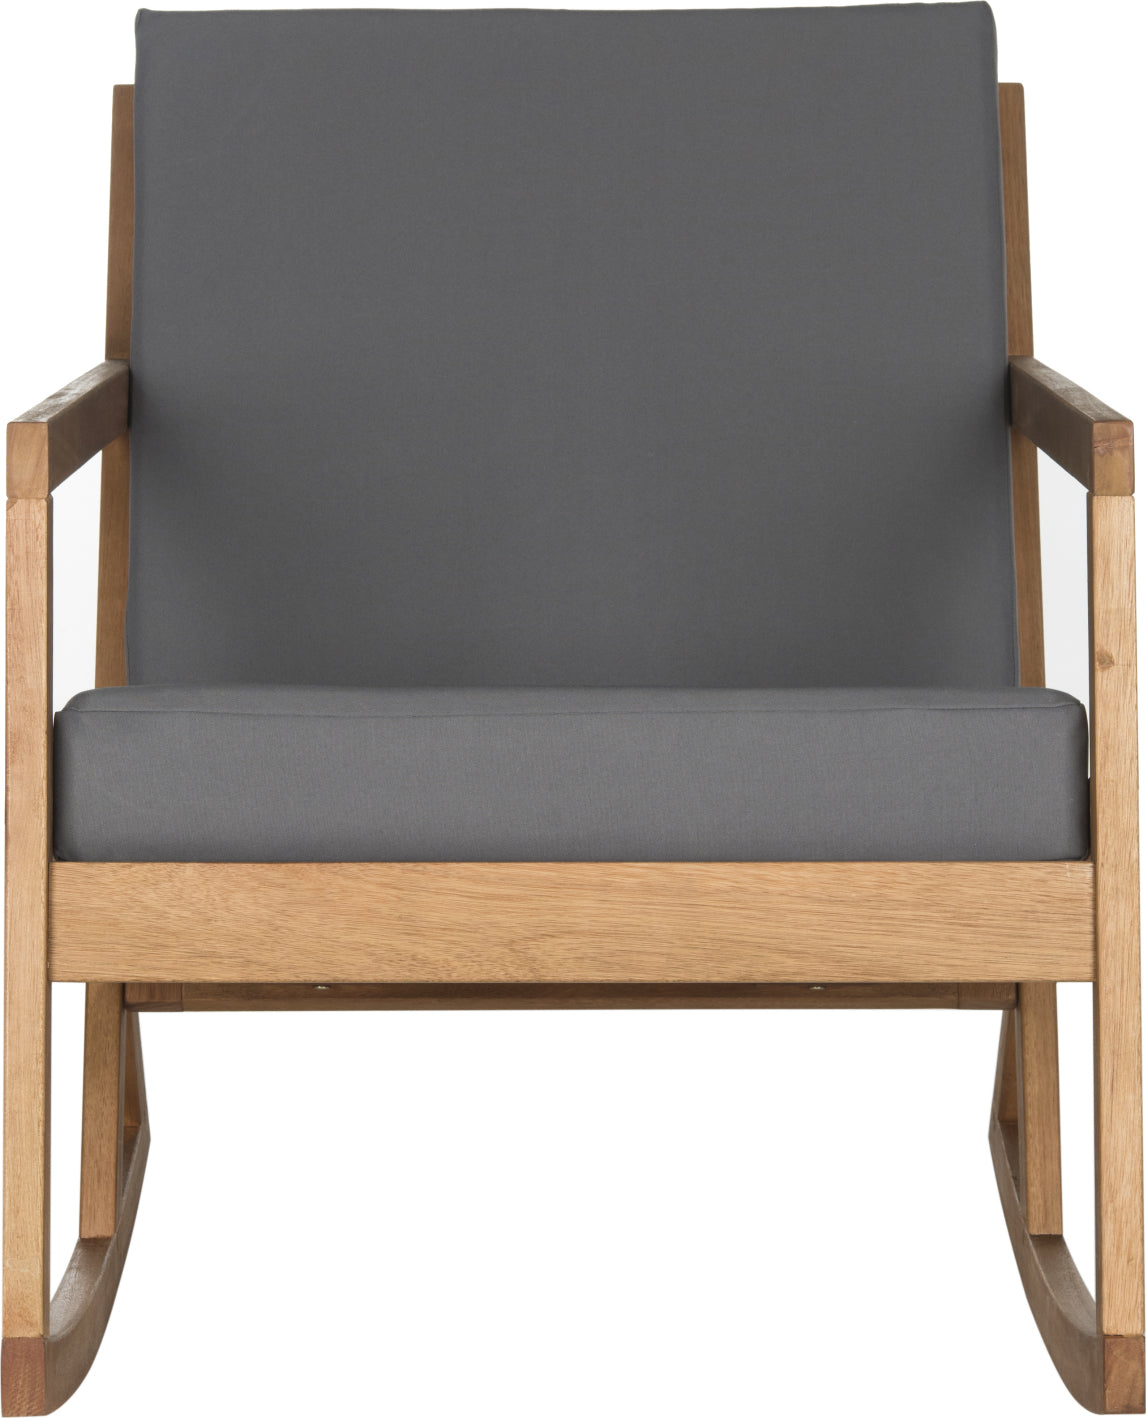 Safavieh Vernon Rocking Chair Teak Brown/Grey Furniture main image